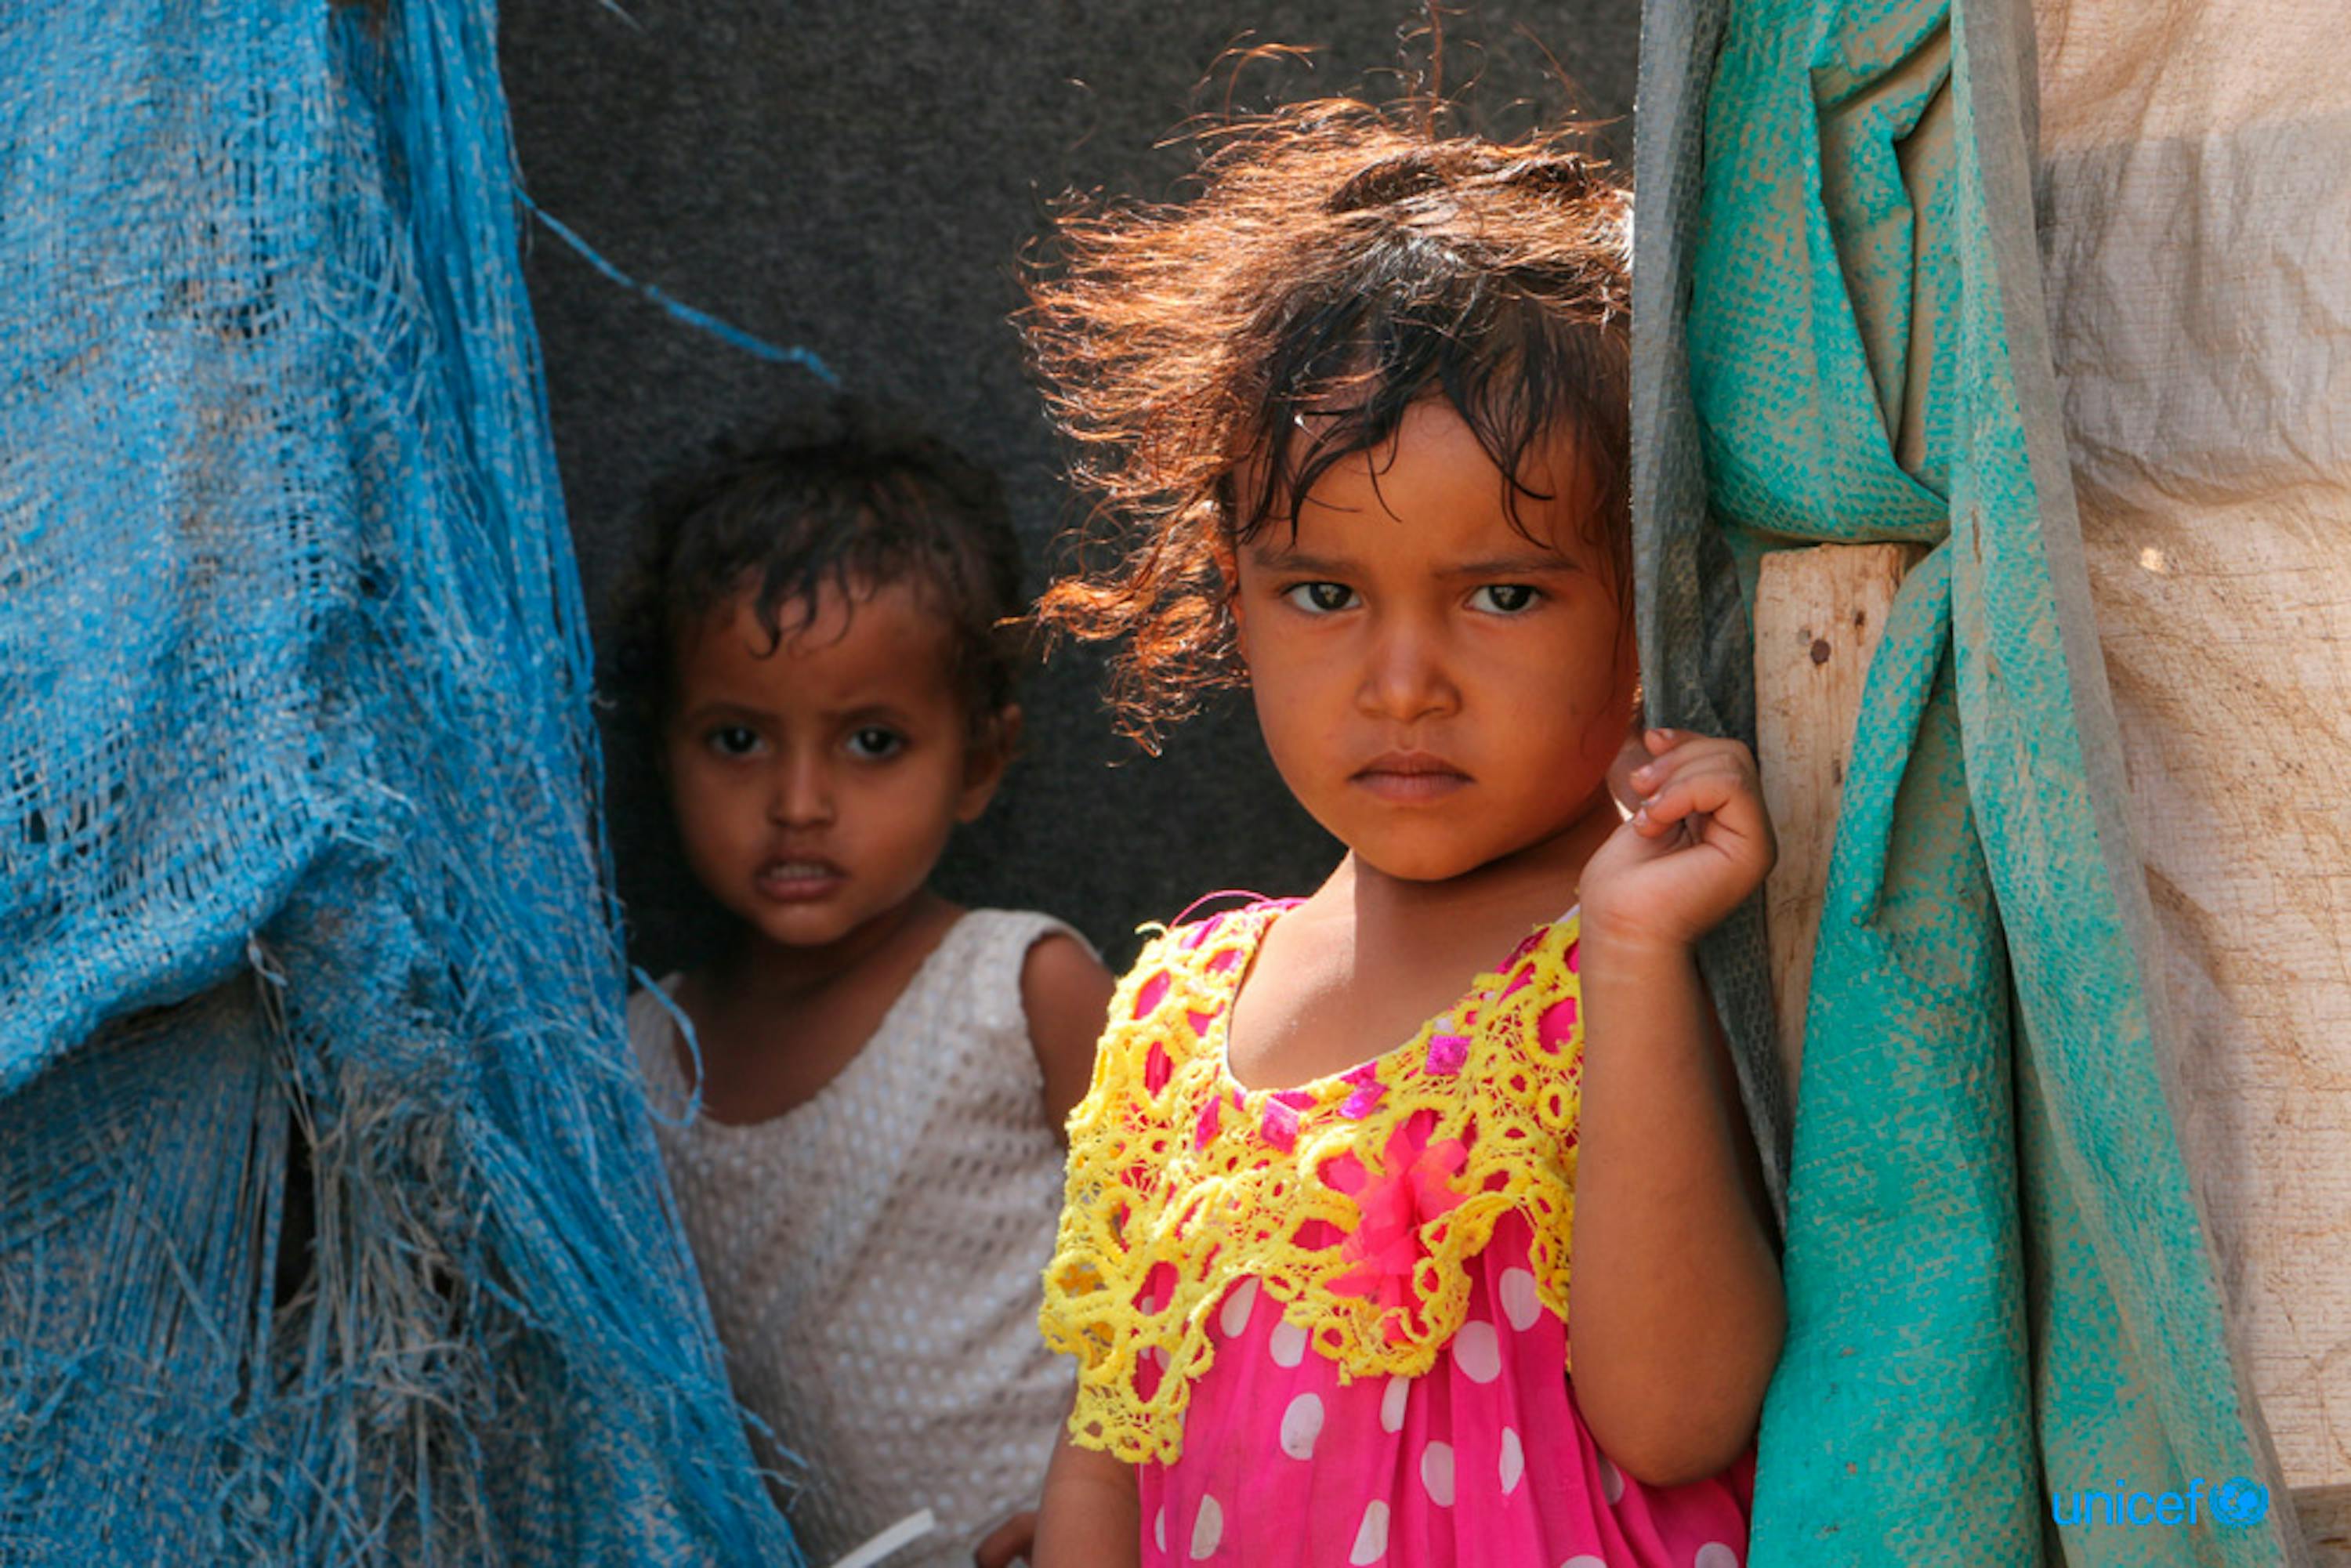 Bambini di Taiz (Yemen) sfollati ad Aden a causa dei combattimenti - ©UNICEF/UN0188089/Abdulhaleem